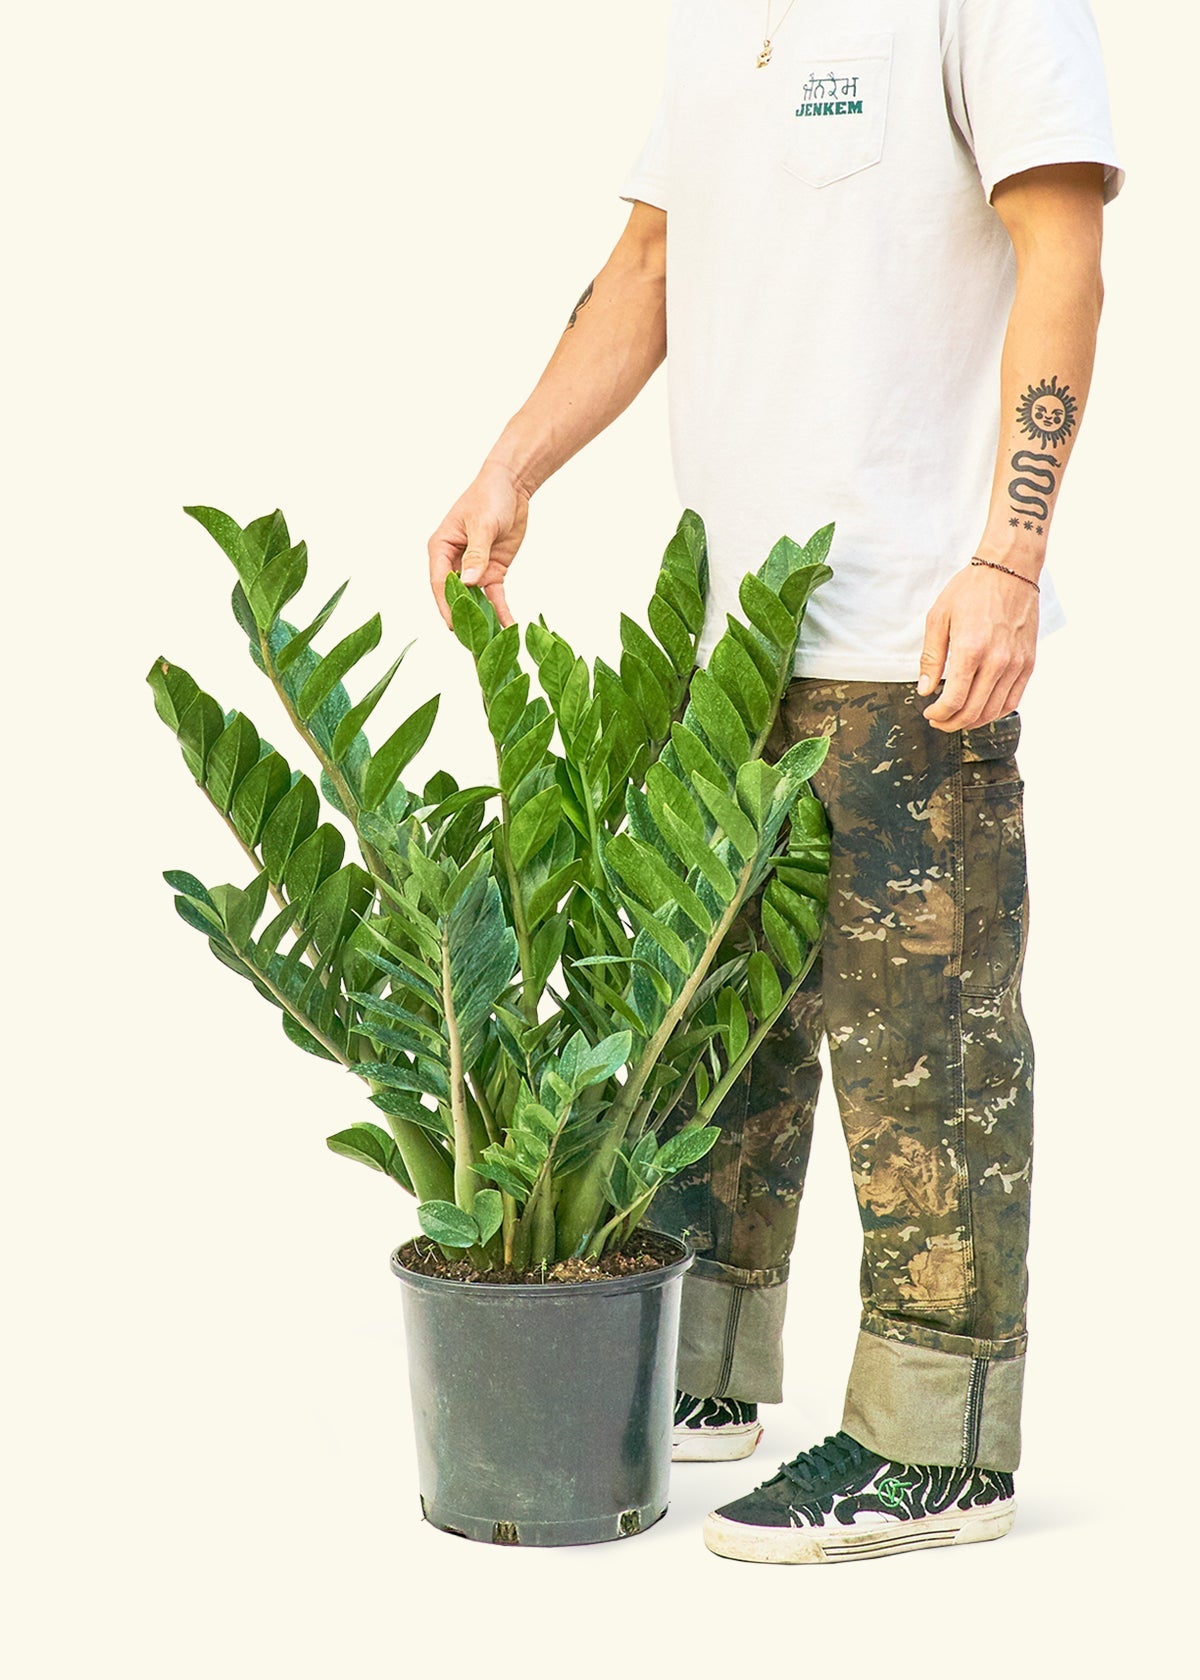 Plant (Zamioculcas zamiifolia) – Rooted